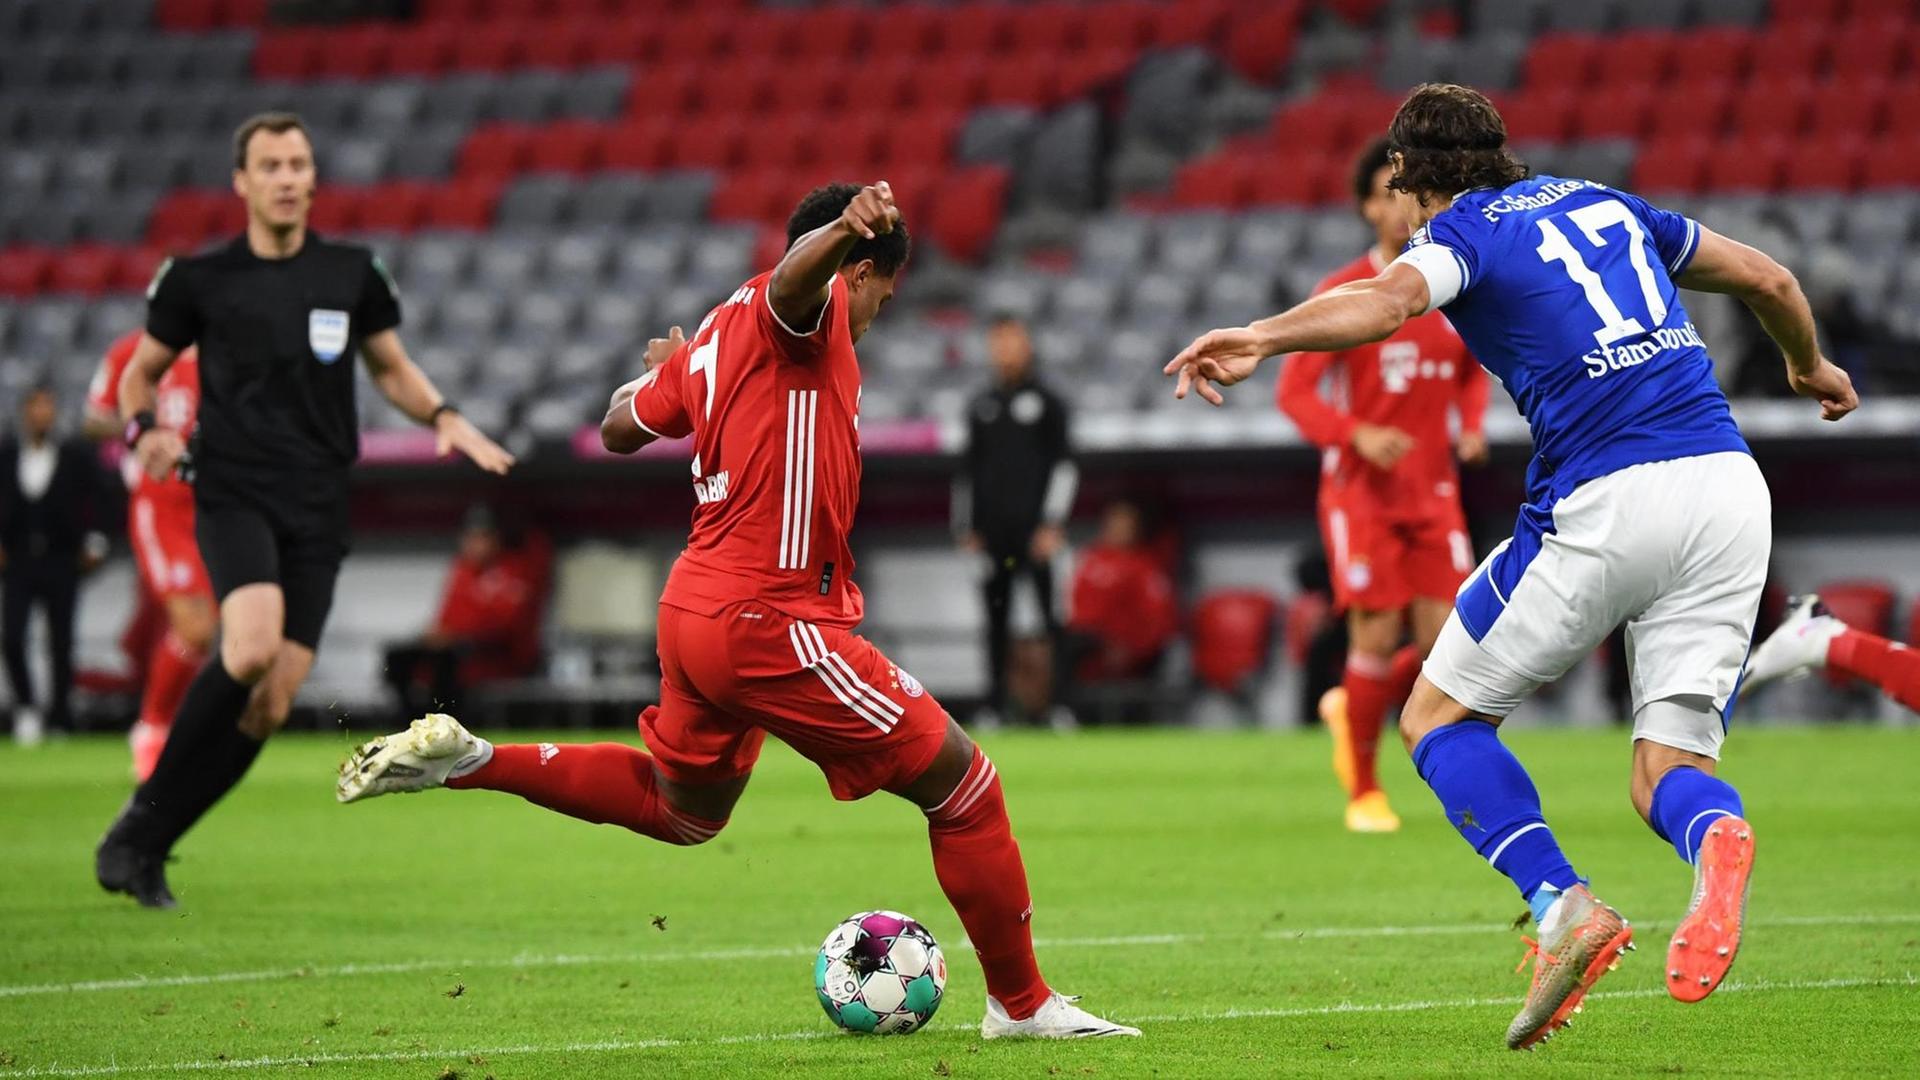 Der Fußball-Spieler von Bayern München Serge Gnabry schießt den Ball.